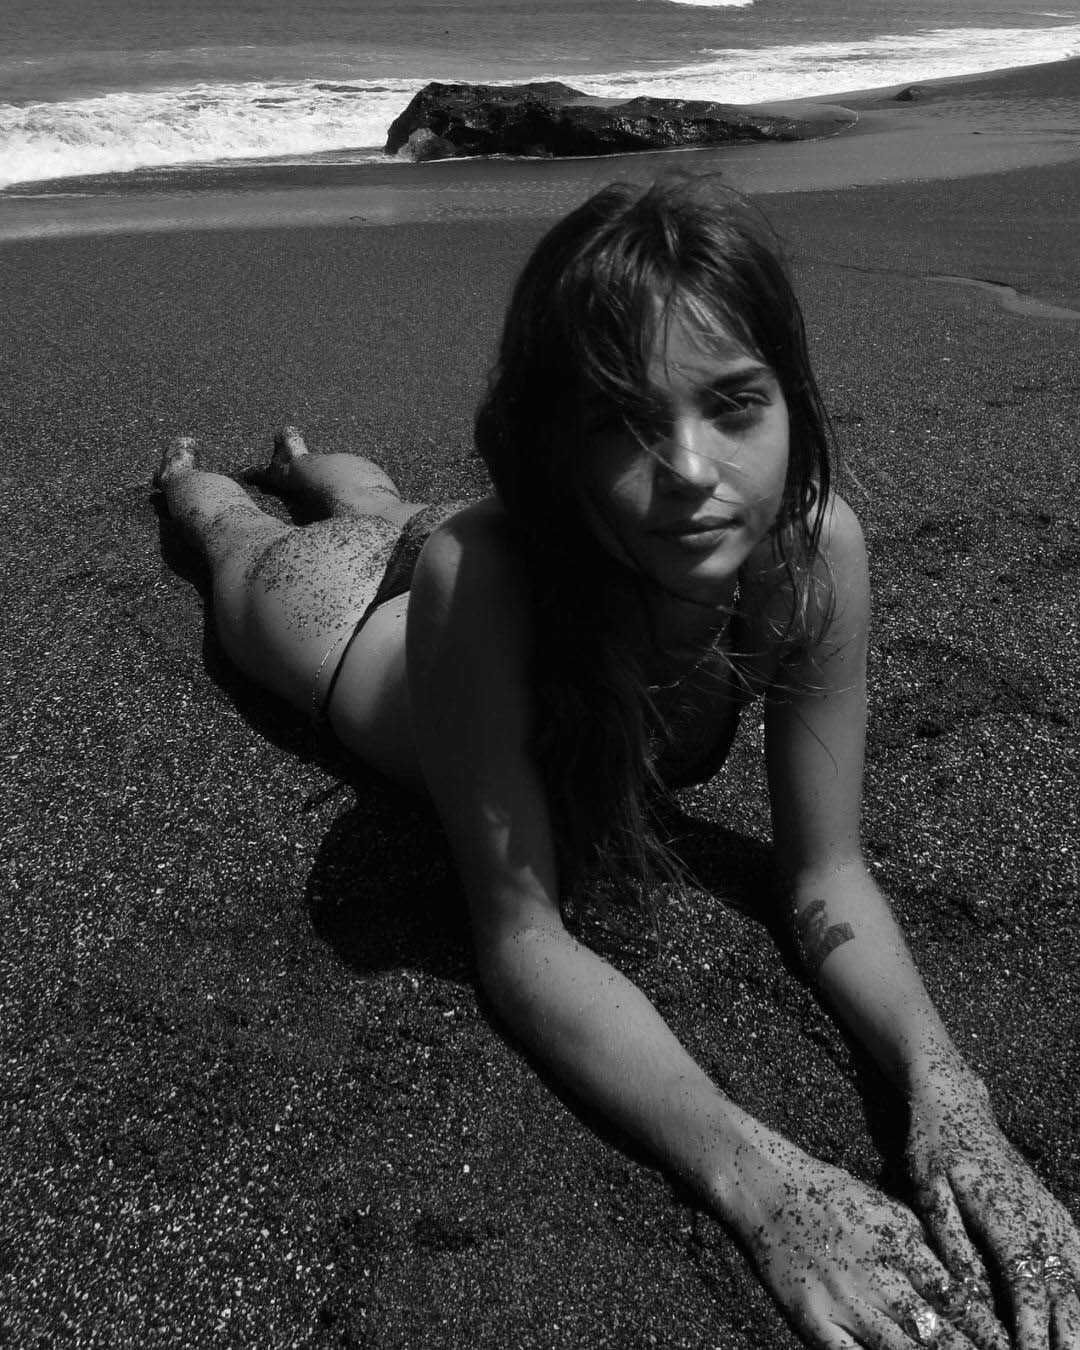 Γυμνή σε σέξι φωτογραφίες η Inka Williams